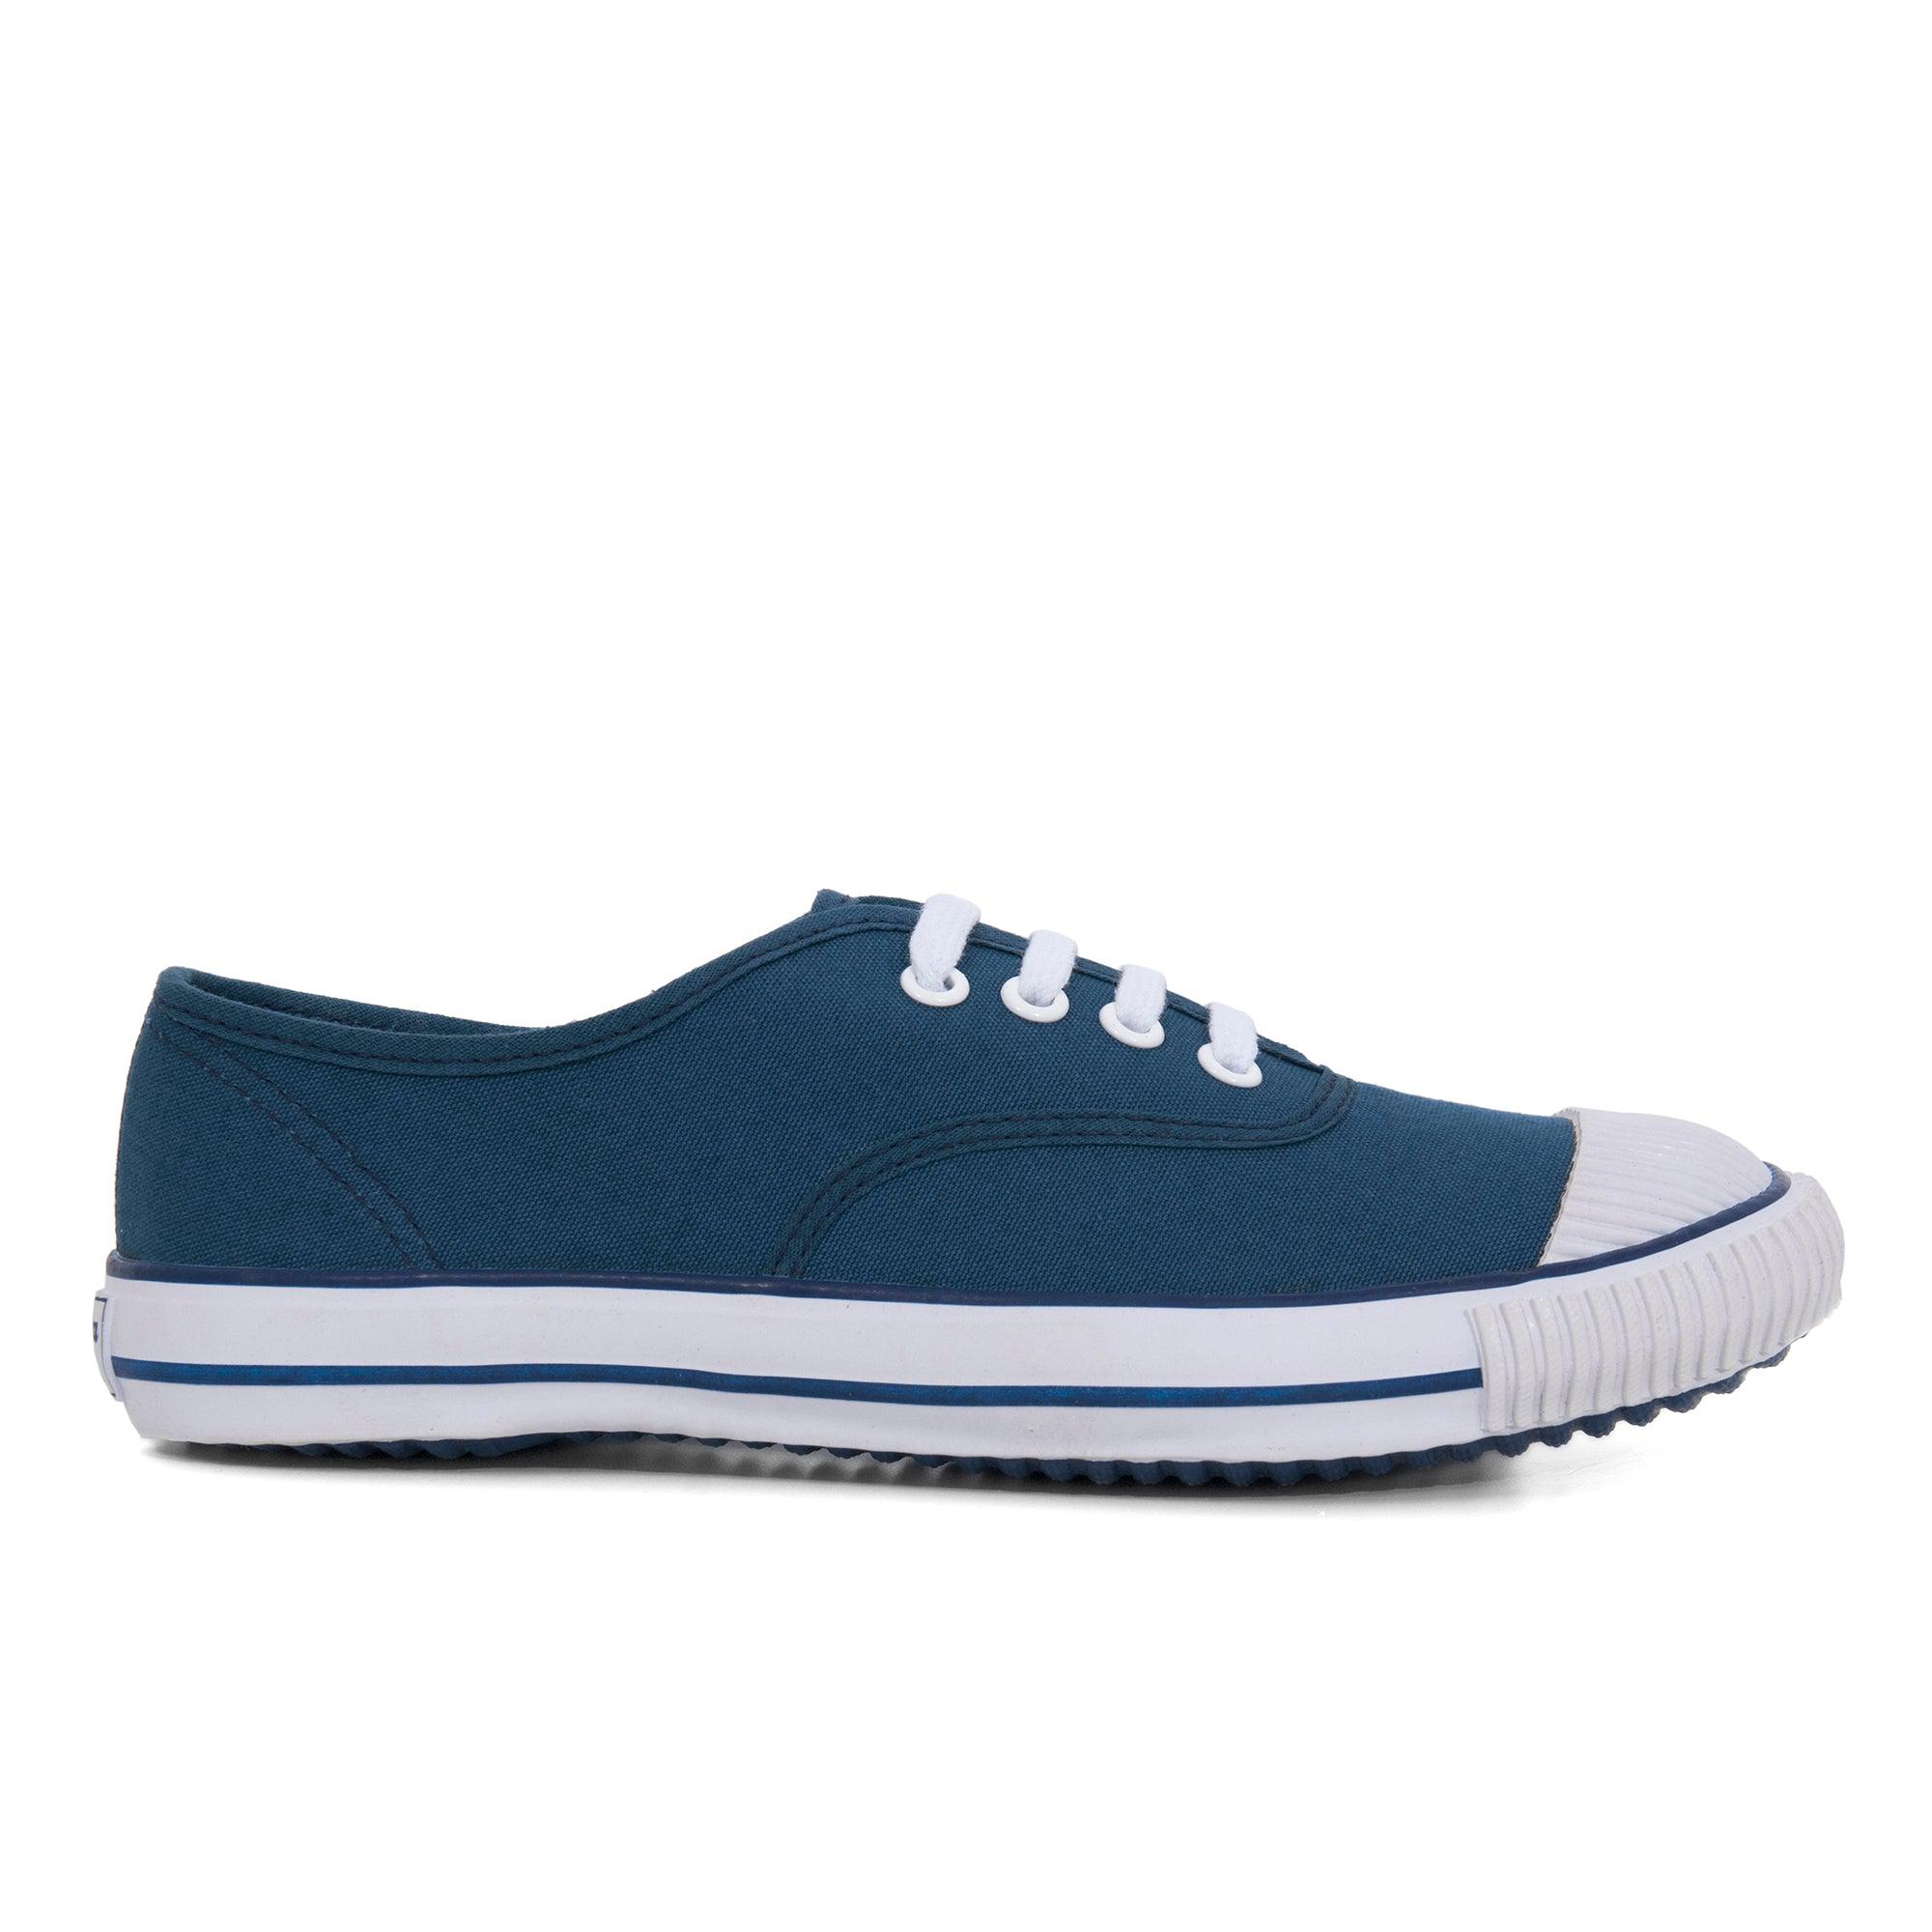 Bata Classic Tennis Shoe (Blue) by BATA